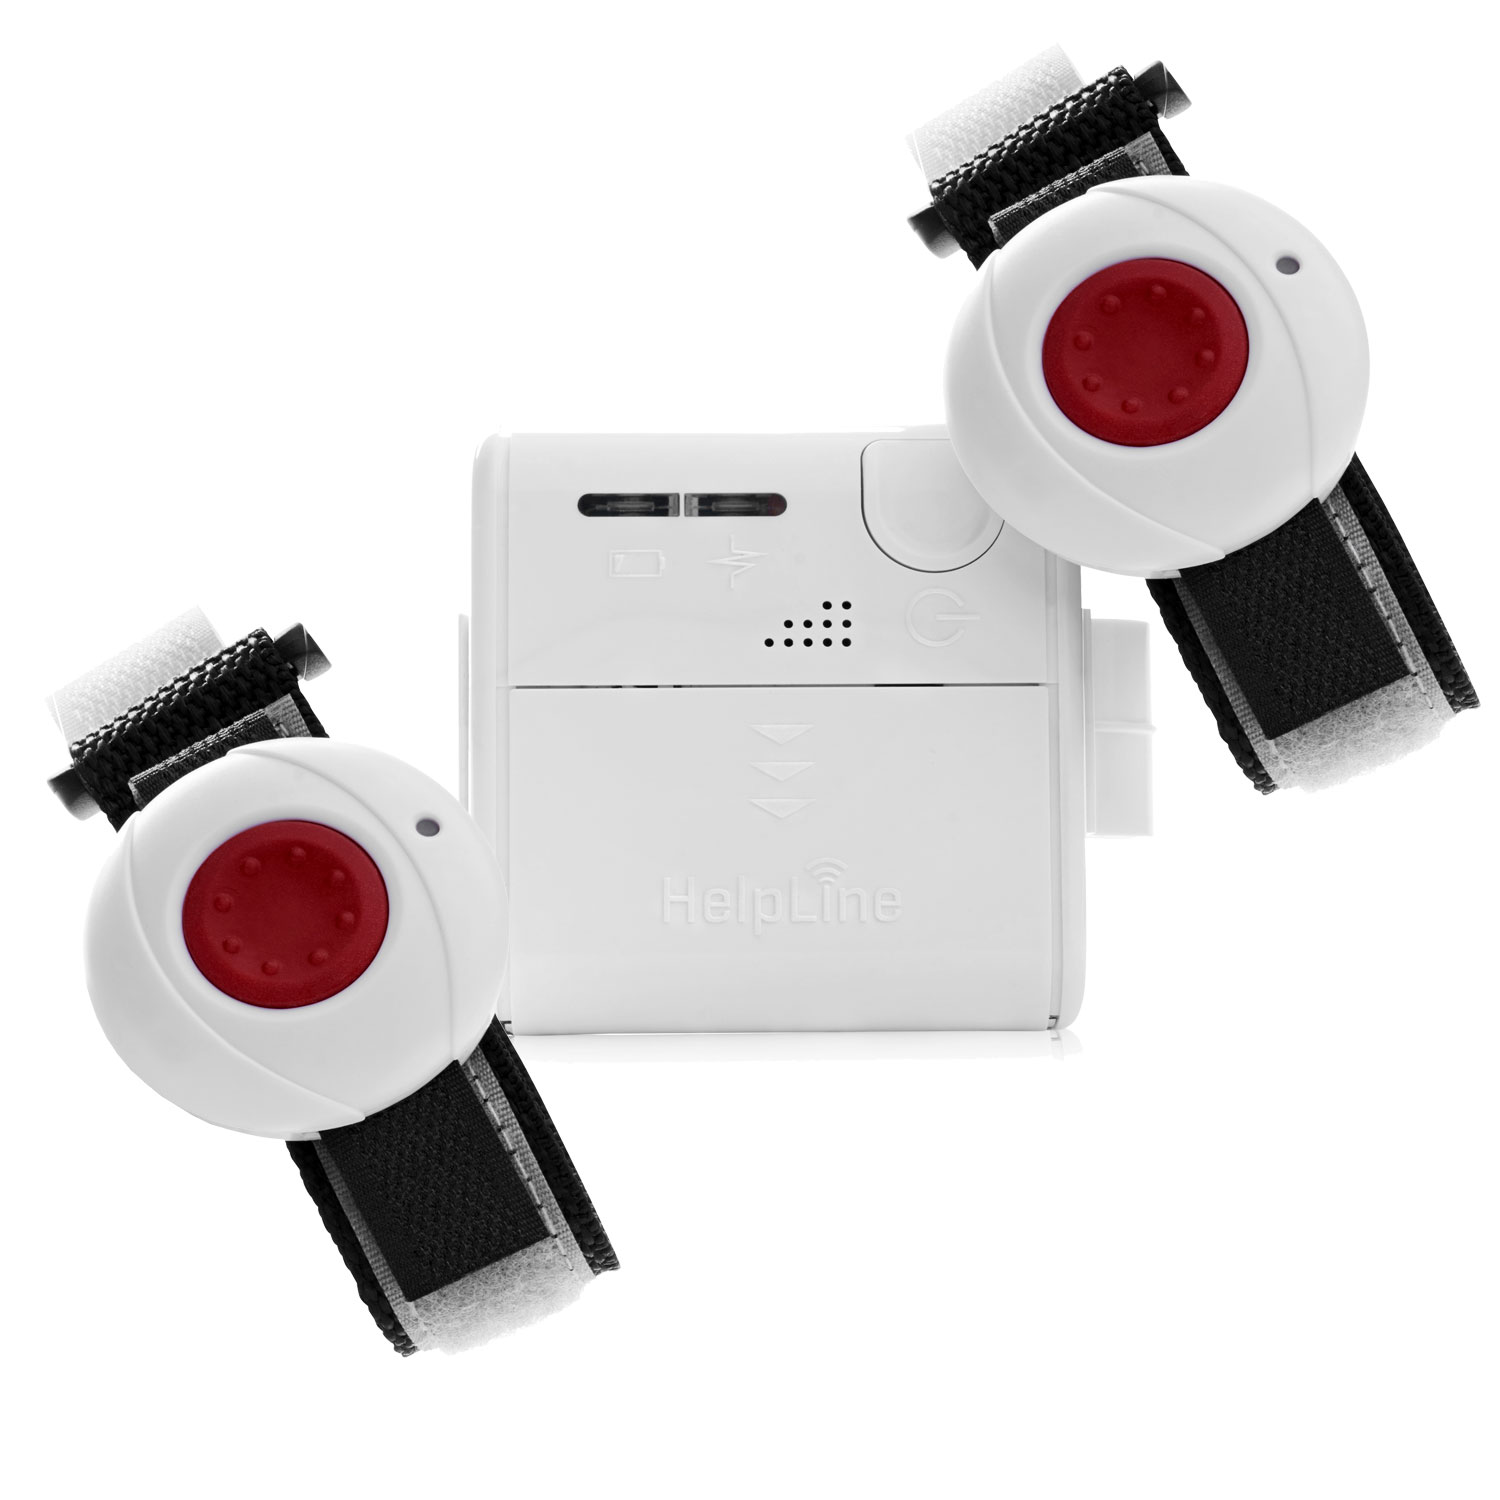 HelpLine Mini für Zwei: Kleiner mobiler Hausnotruf mit zwei Notruf-Armbandsendern